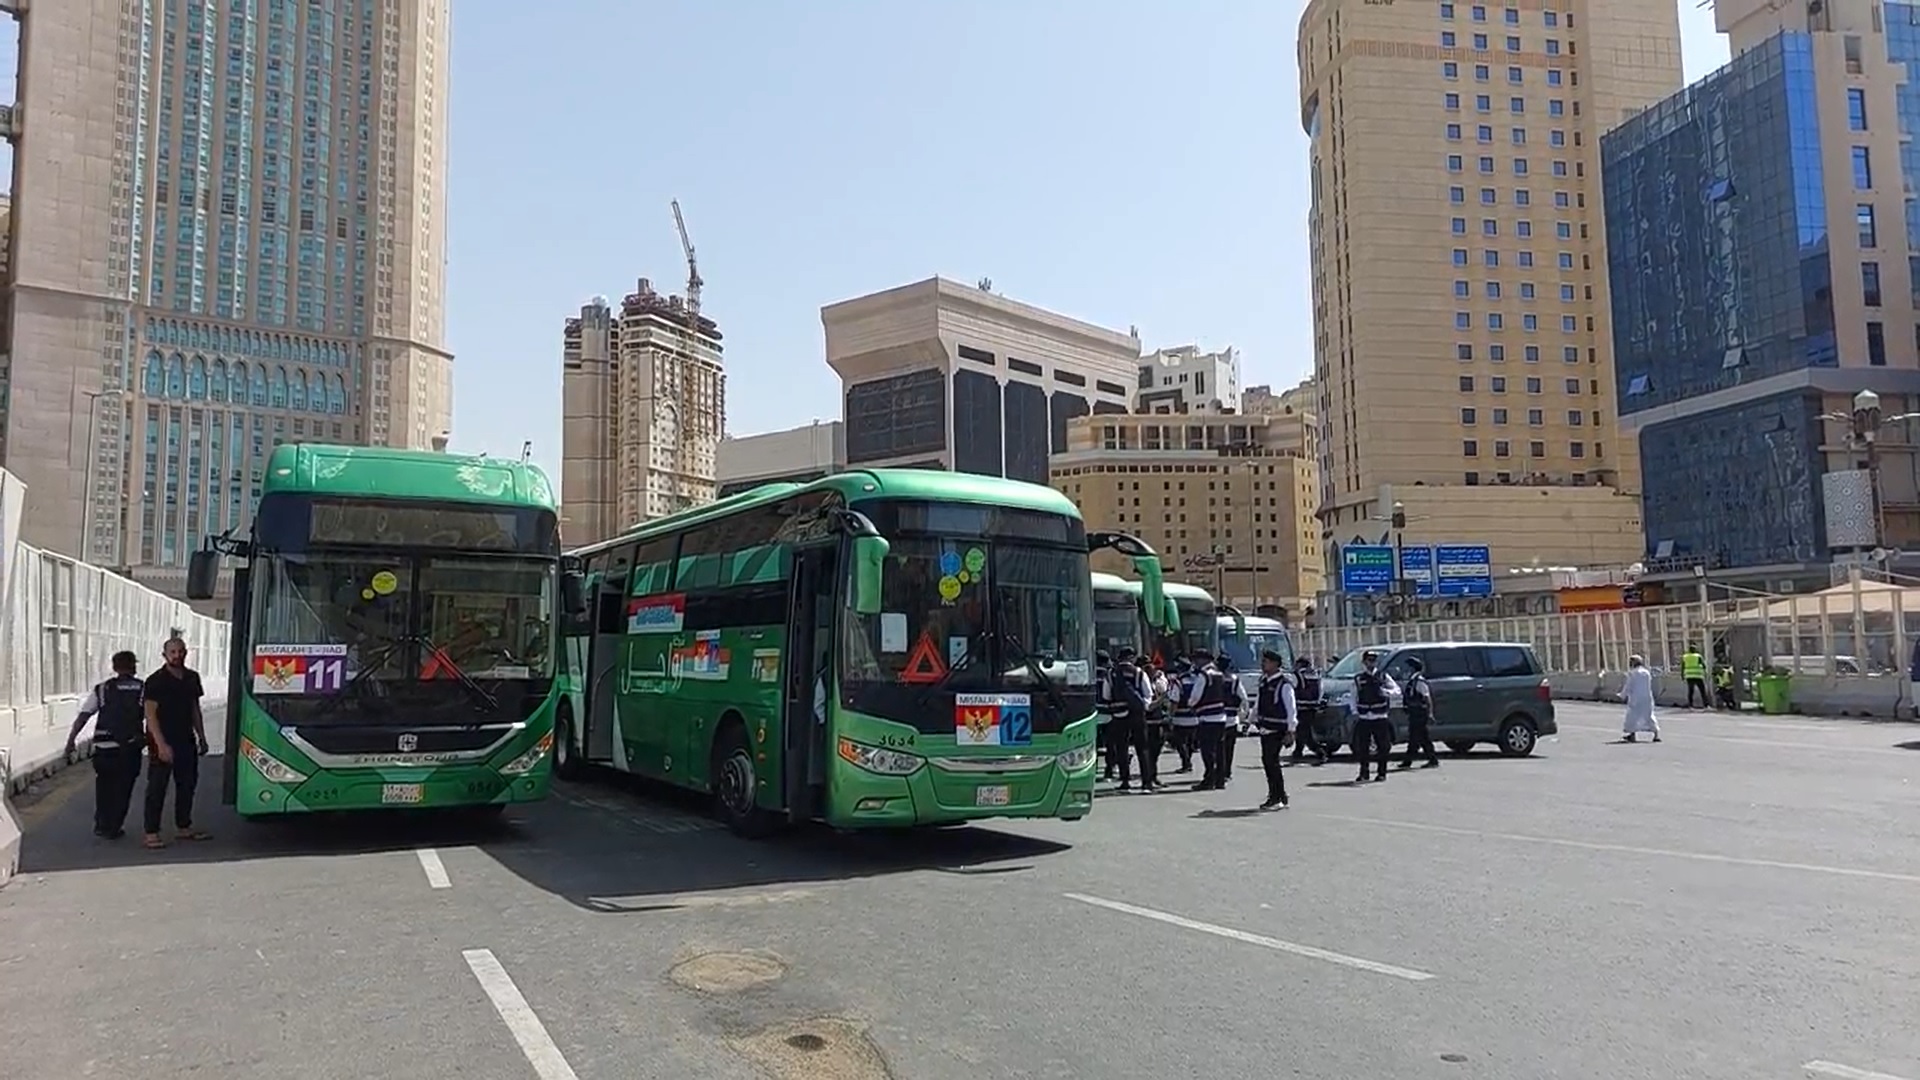 Beroperasi 24 Jam, Ini Rute Bus Shalawat di Makkah. Bisa Dilihat Dari Warna dan Nomor